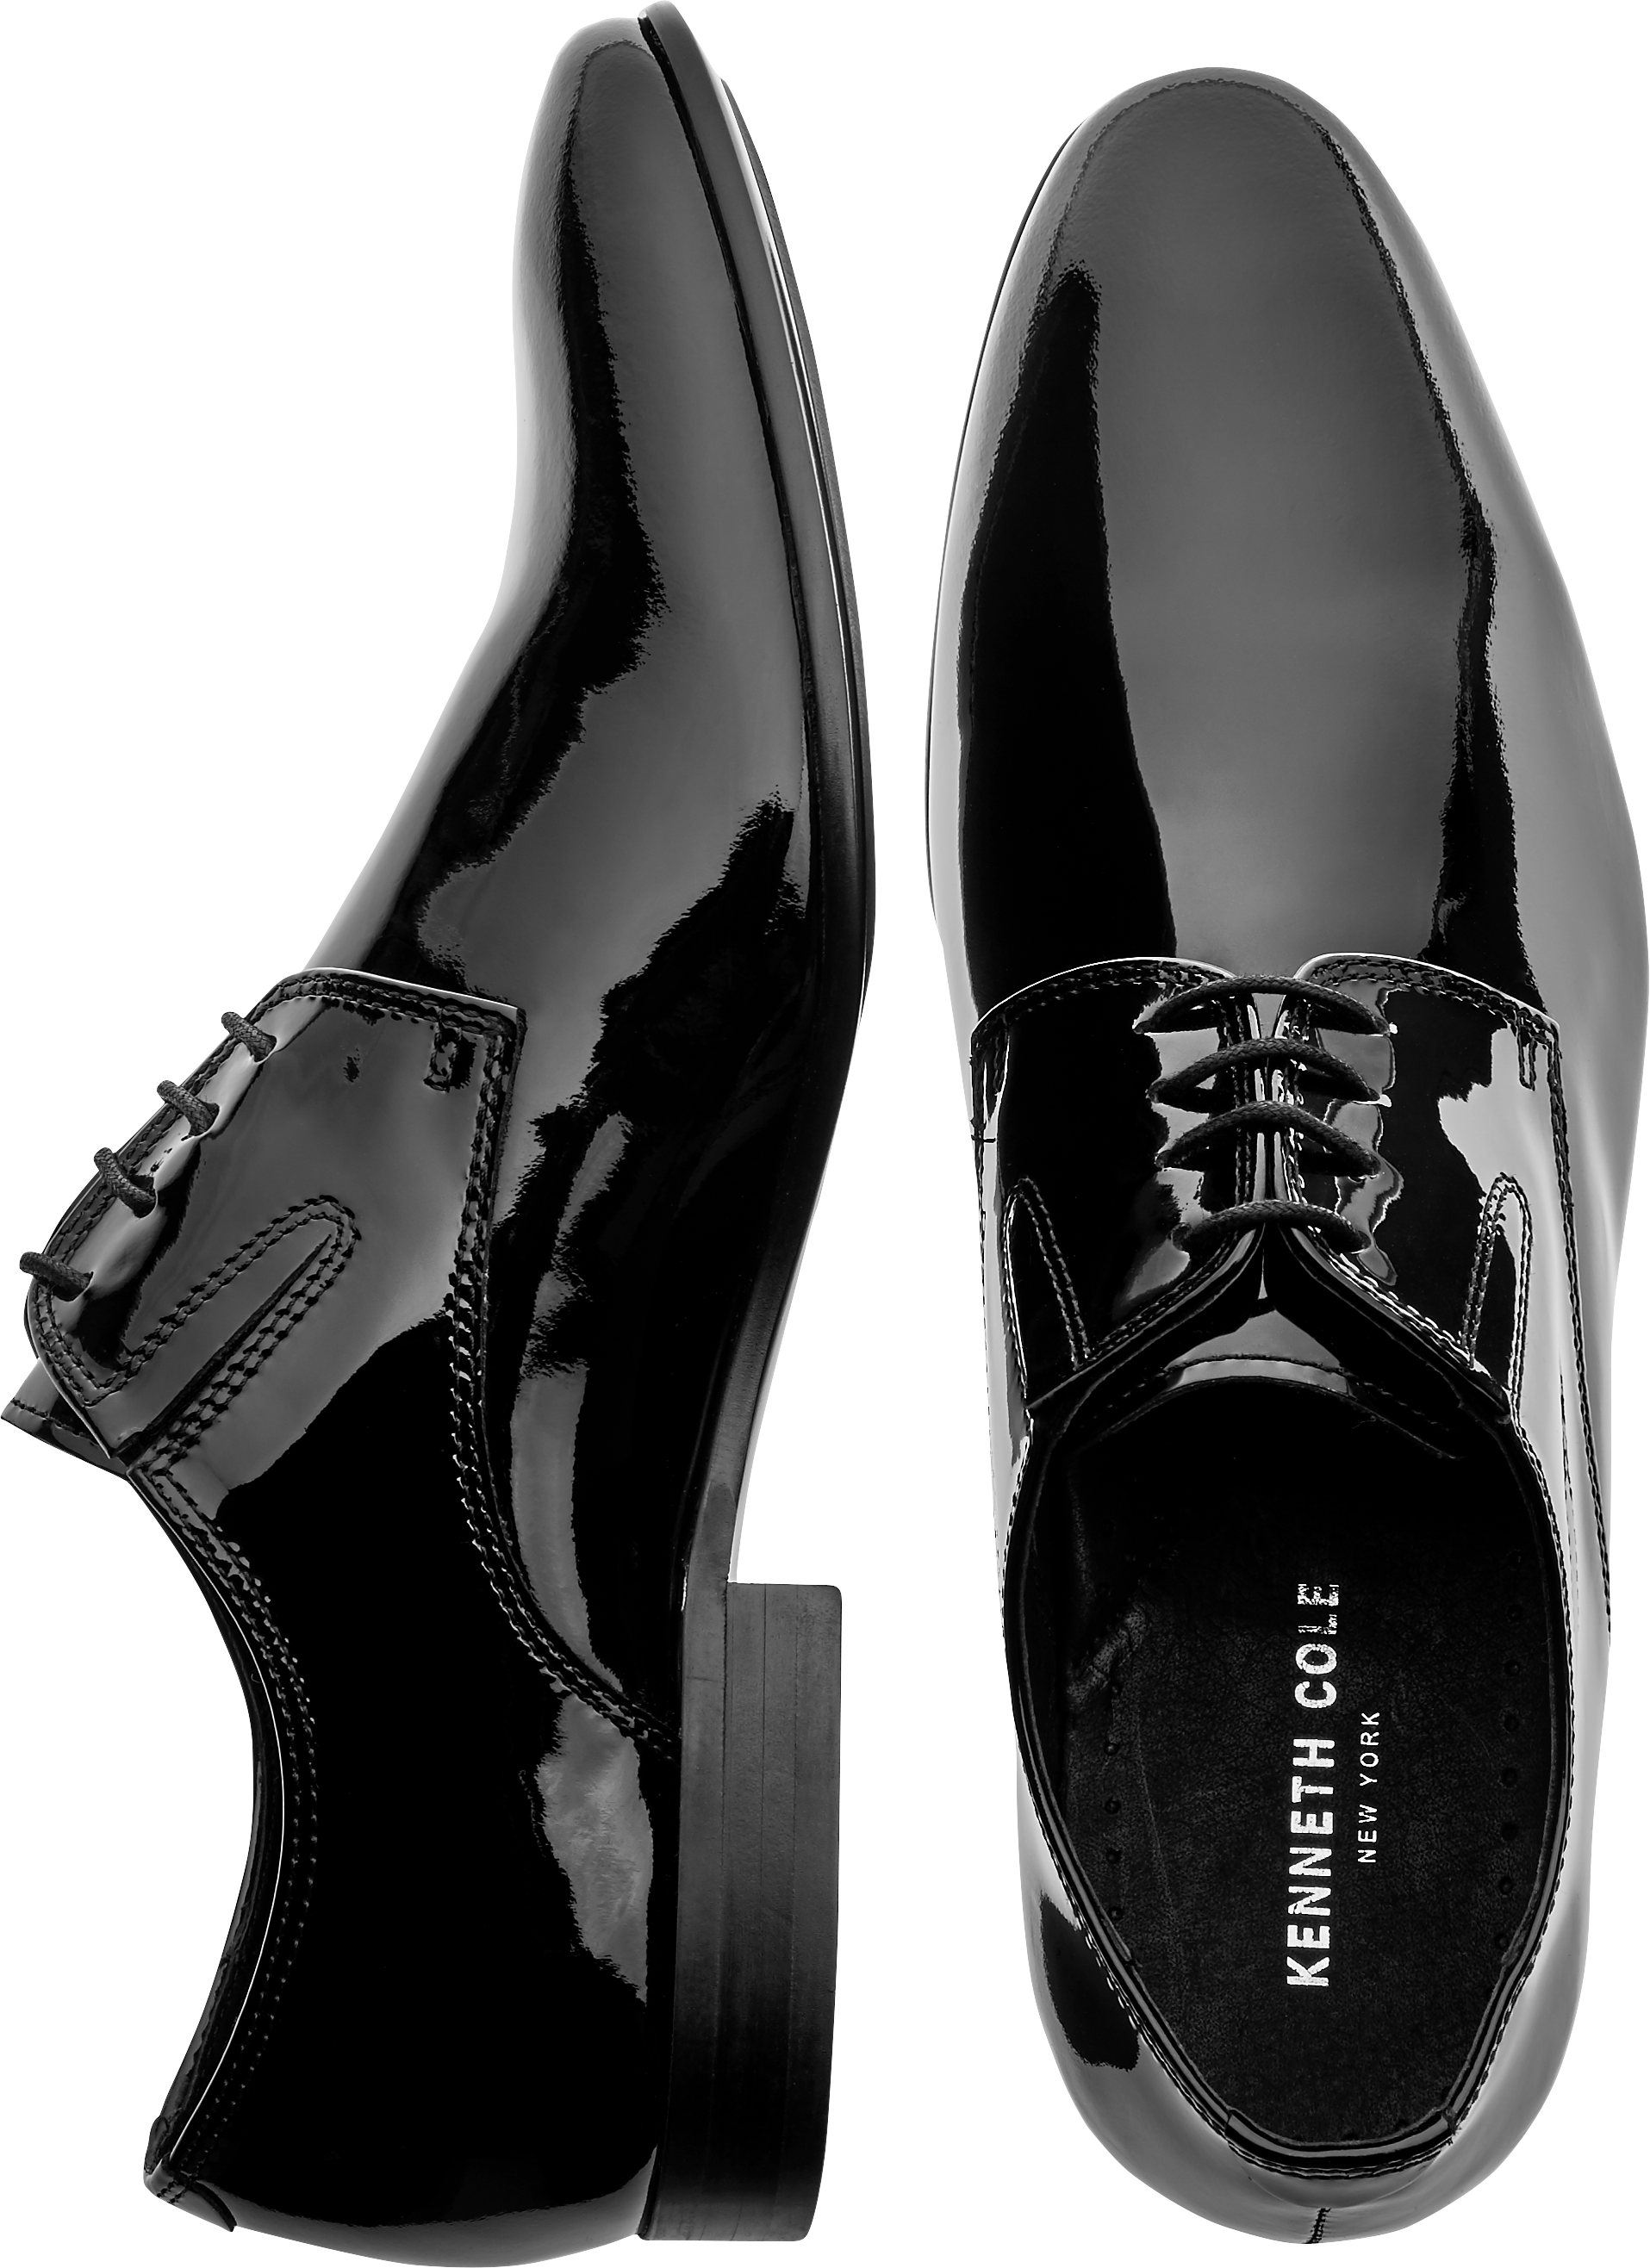 Kenneth Cole Mix-Er Black Patent Oxford Dress Shoes - Men's Dress Shoes ...